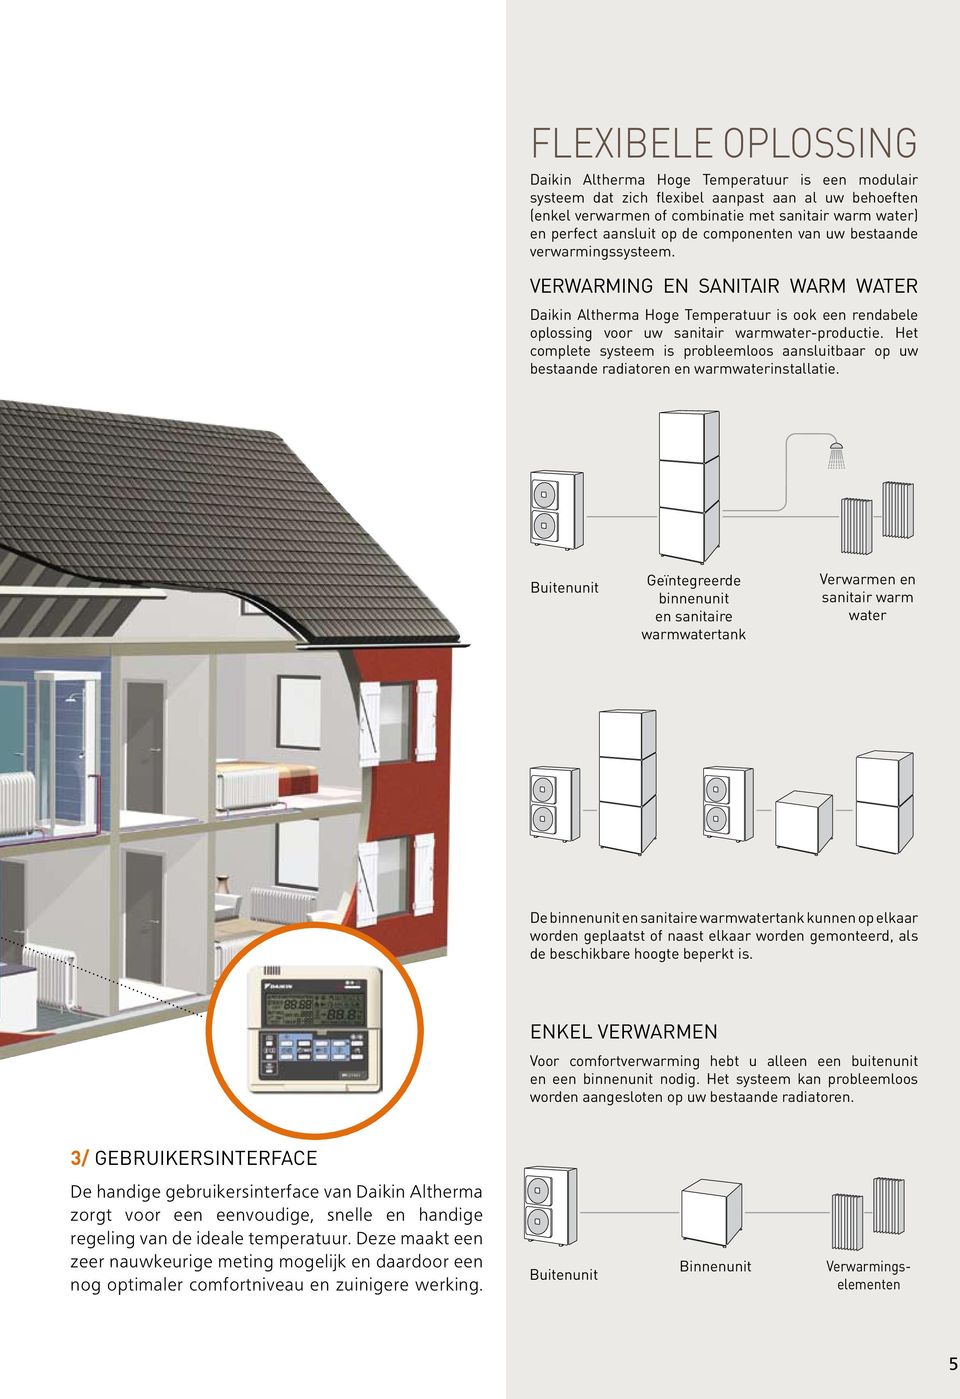 Het complete systeem is probleemloos aansluitbaar op uw bestaande radiatoren en warmwaterinstallatie.